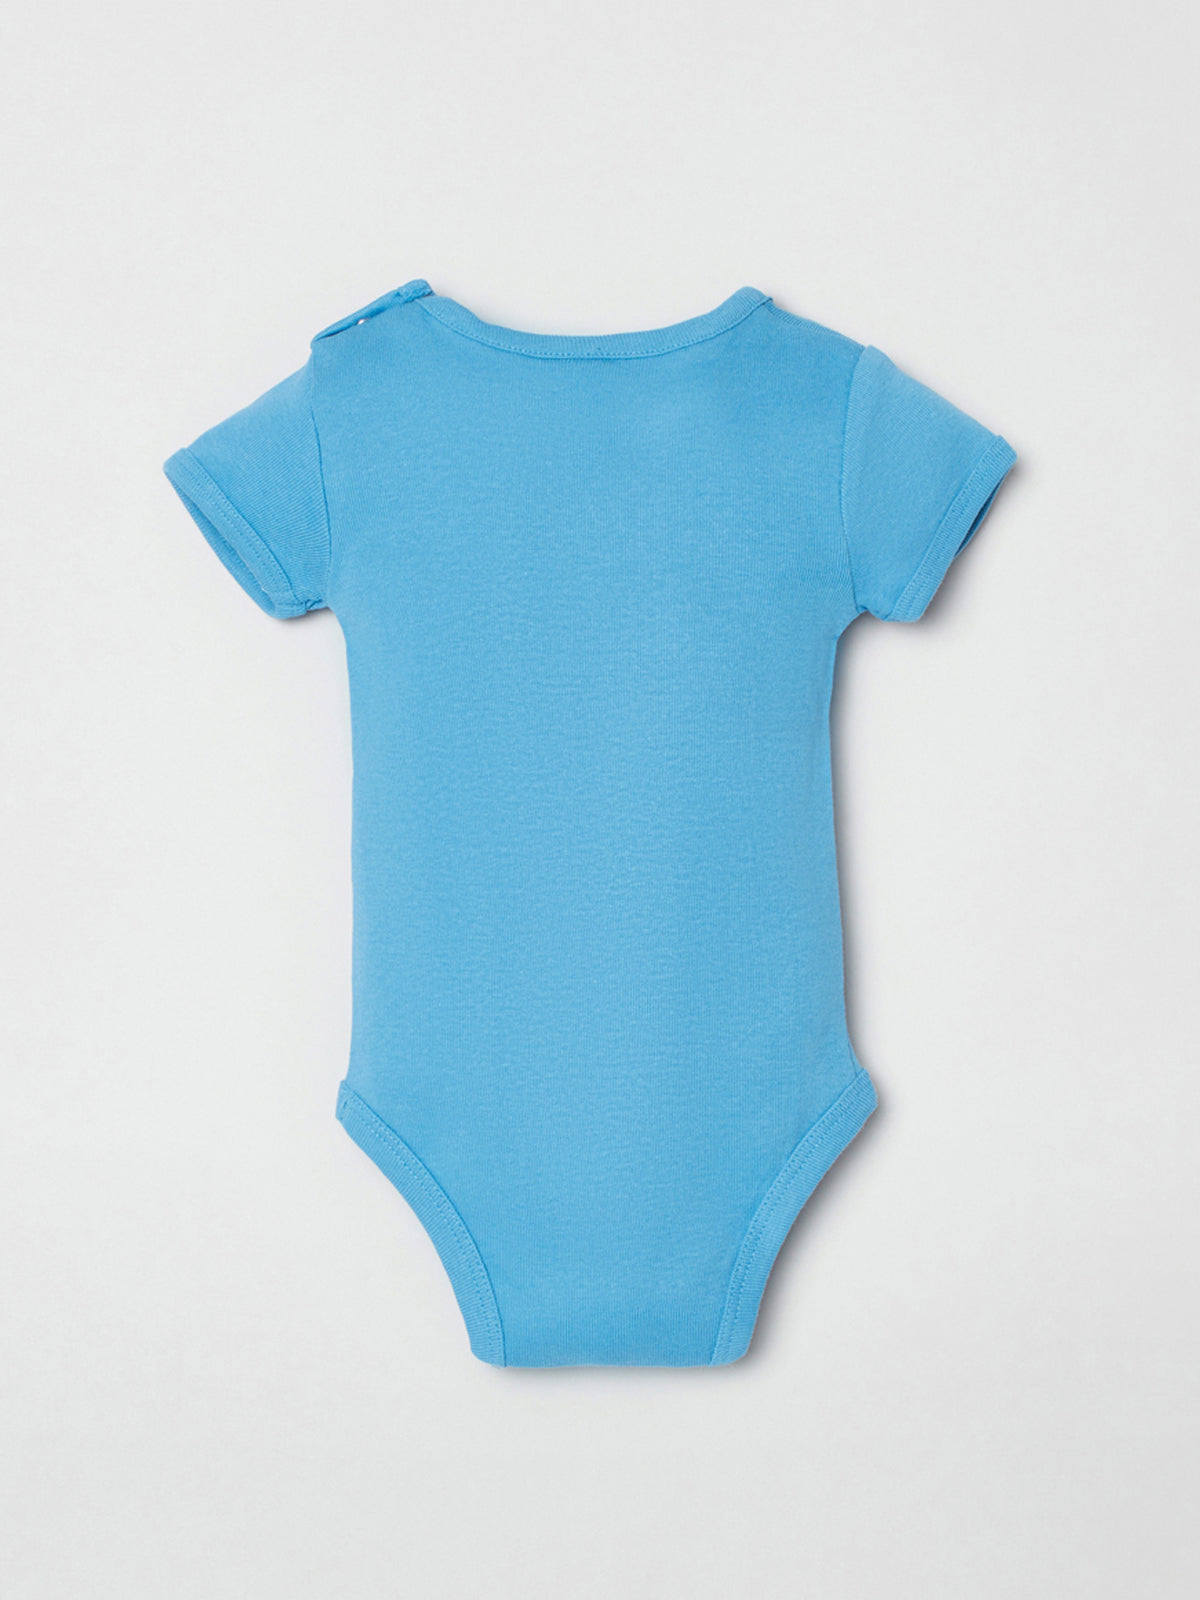 מארז בגדי גוף בהדפס מיקי מאוס / תינוקות יוניסקס